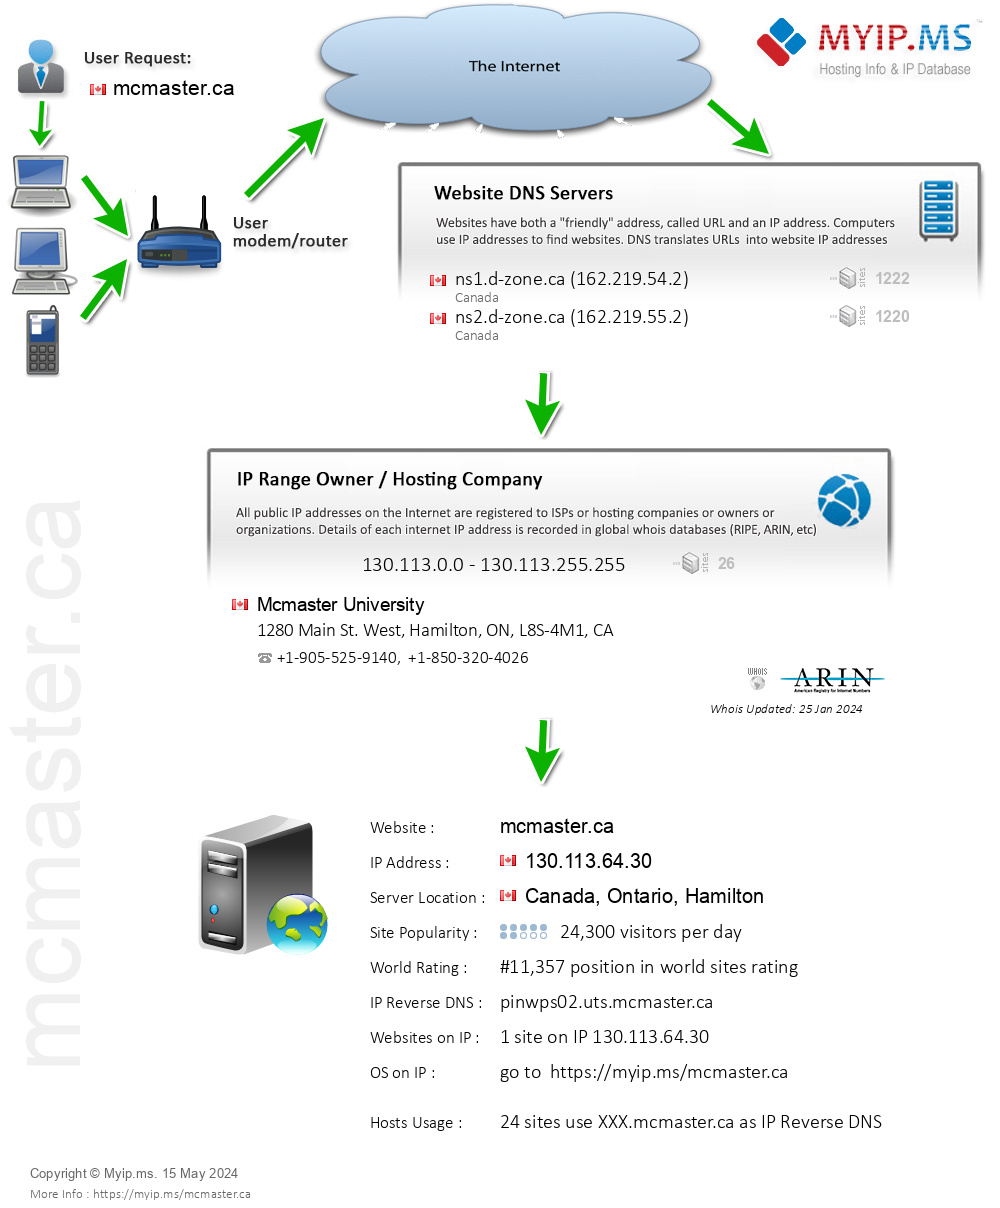 Mcmaster.ca - Website Hosting Visual IP Diagram